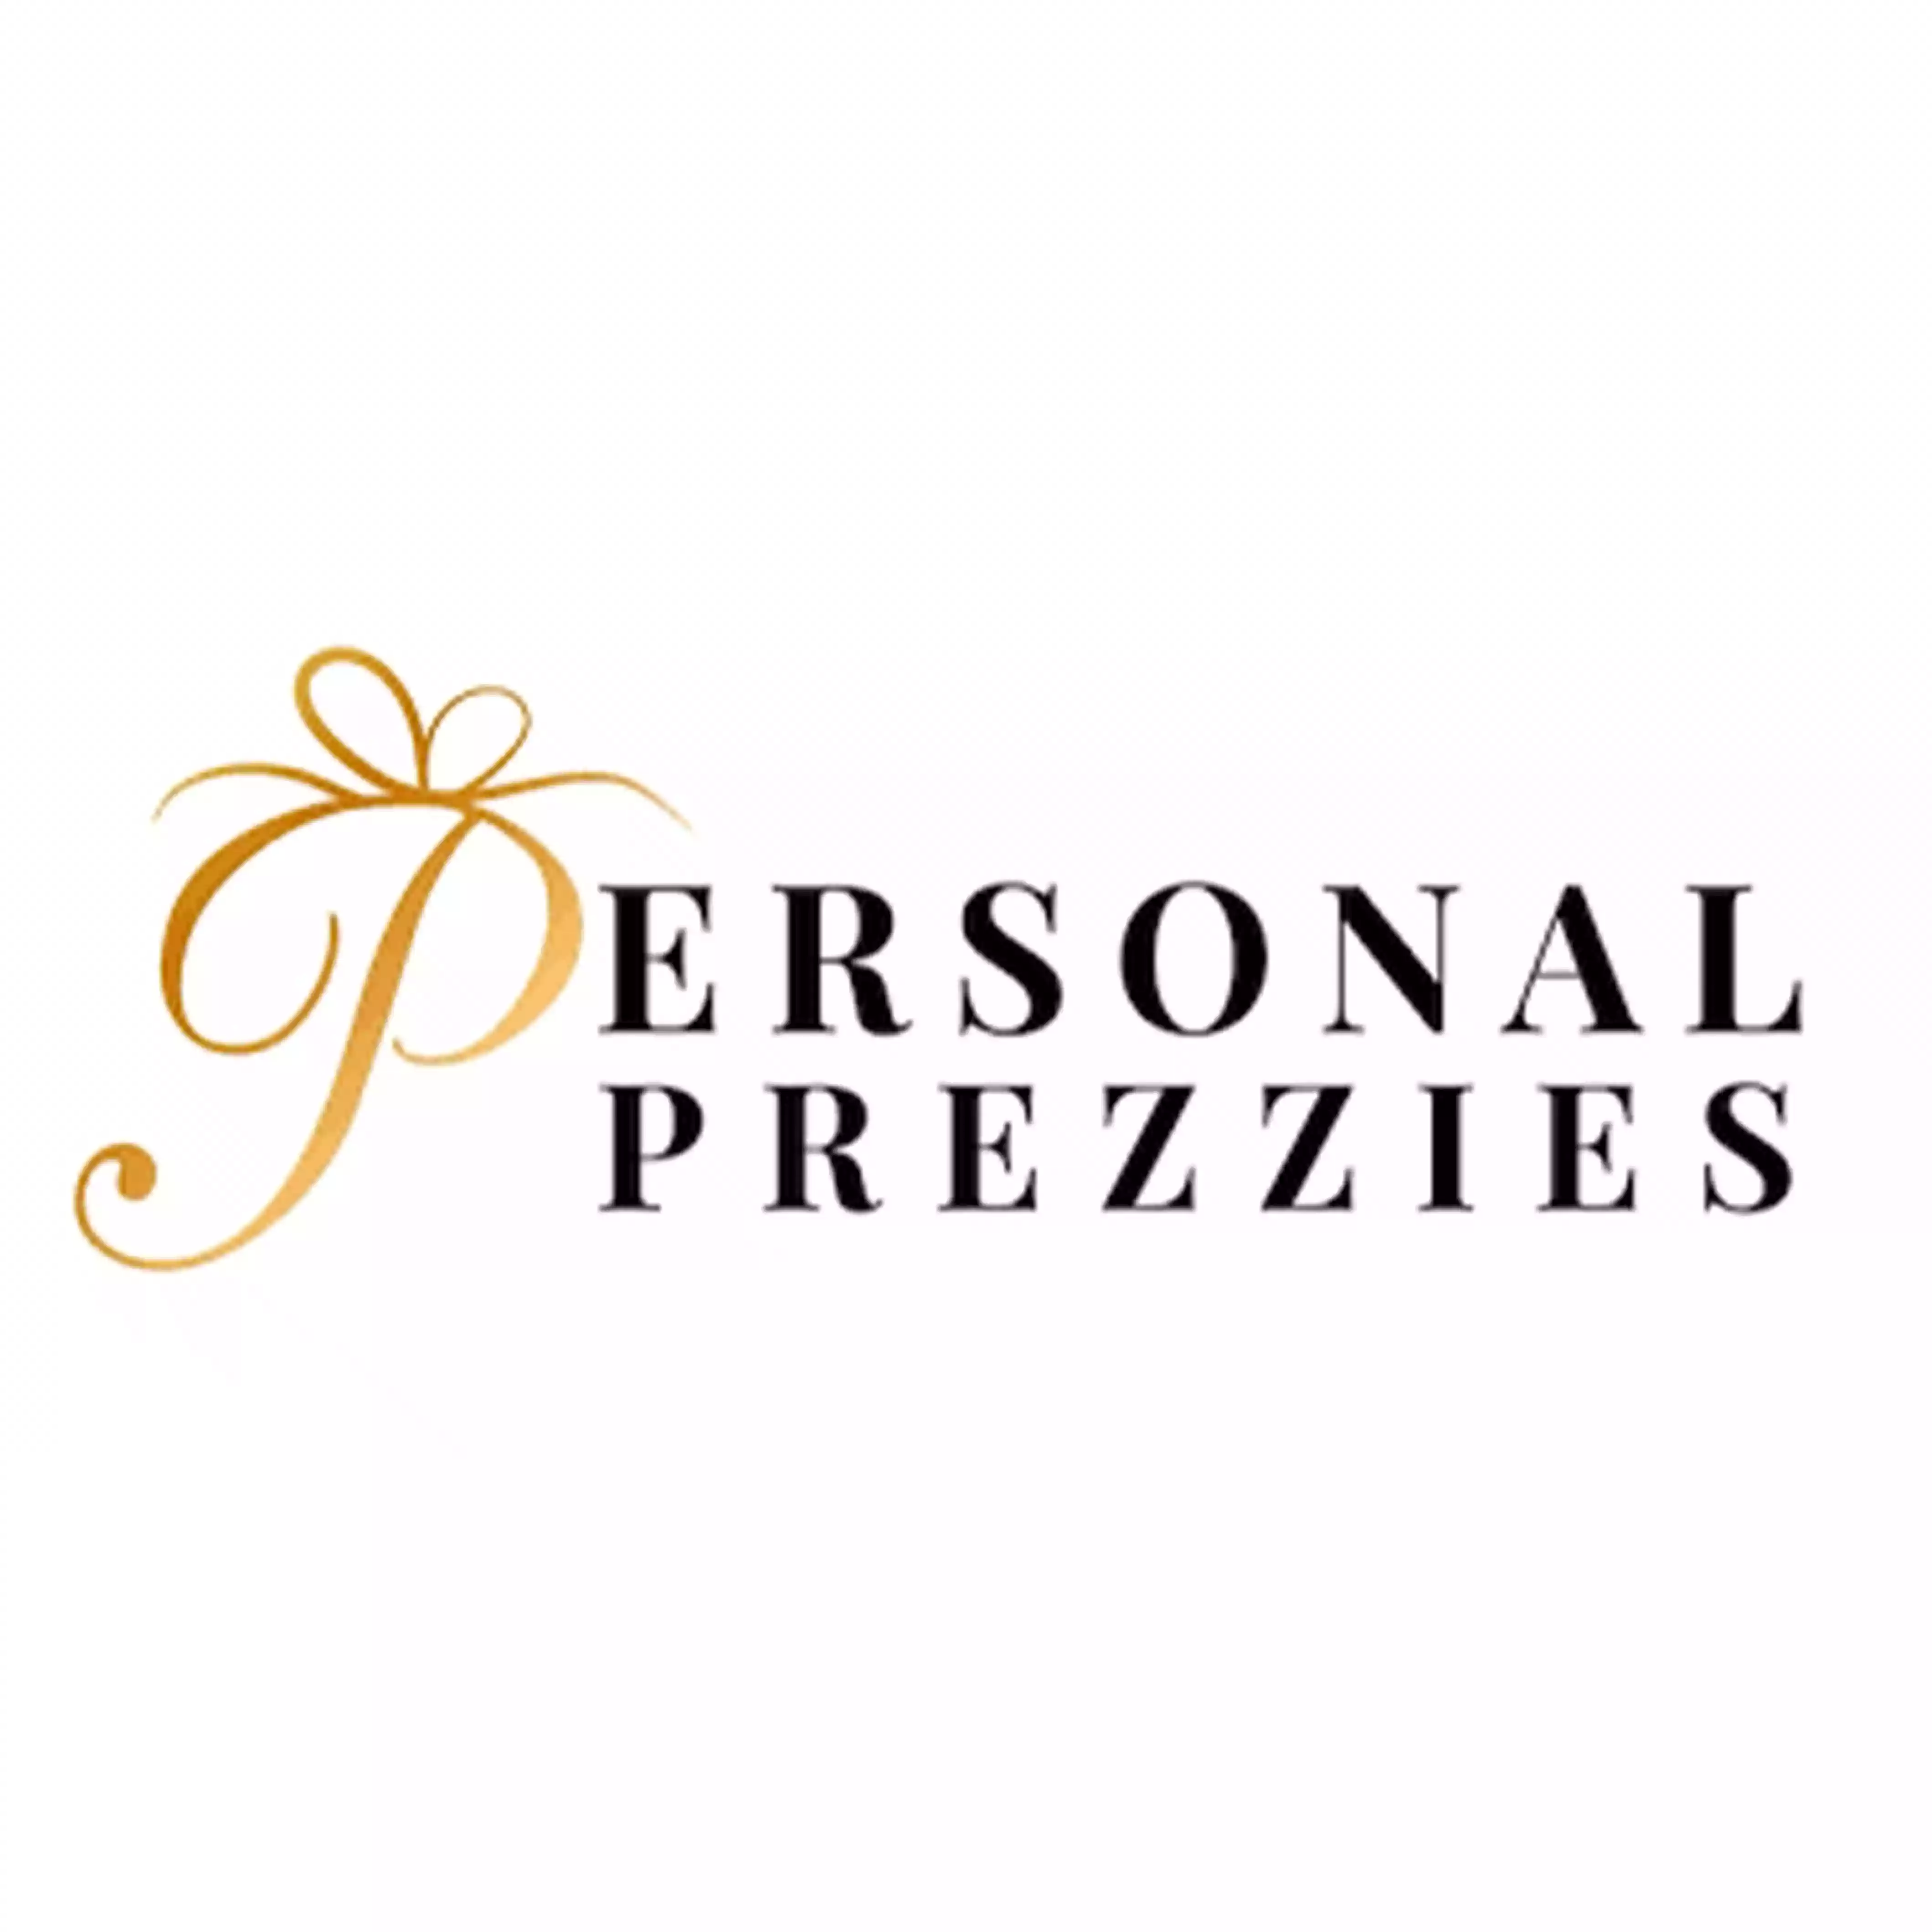 Shop Personal Prezzies logo